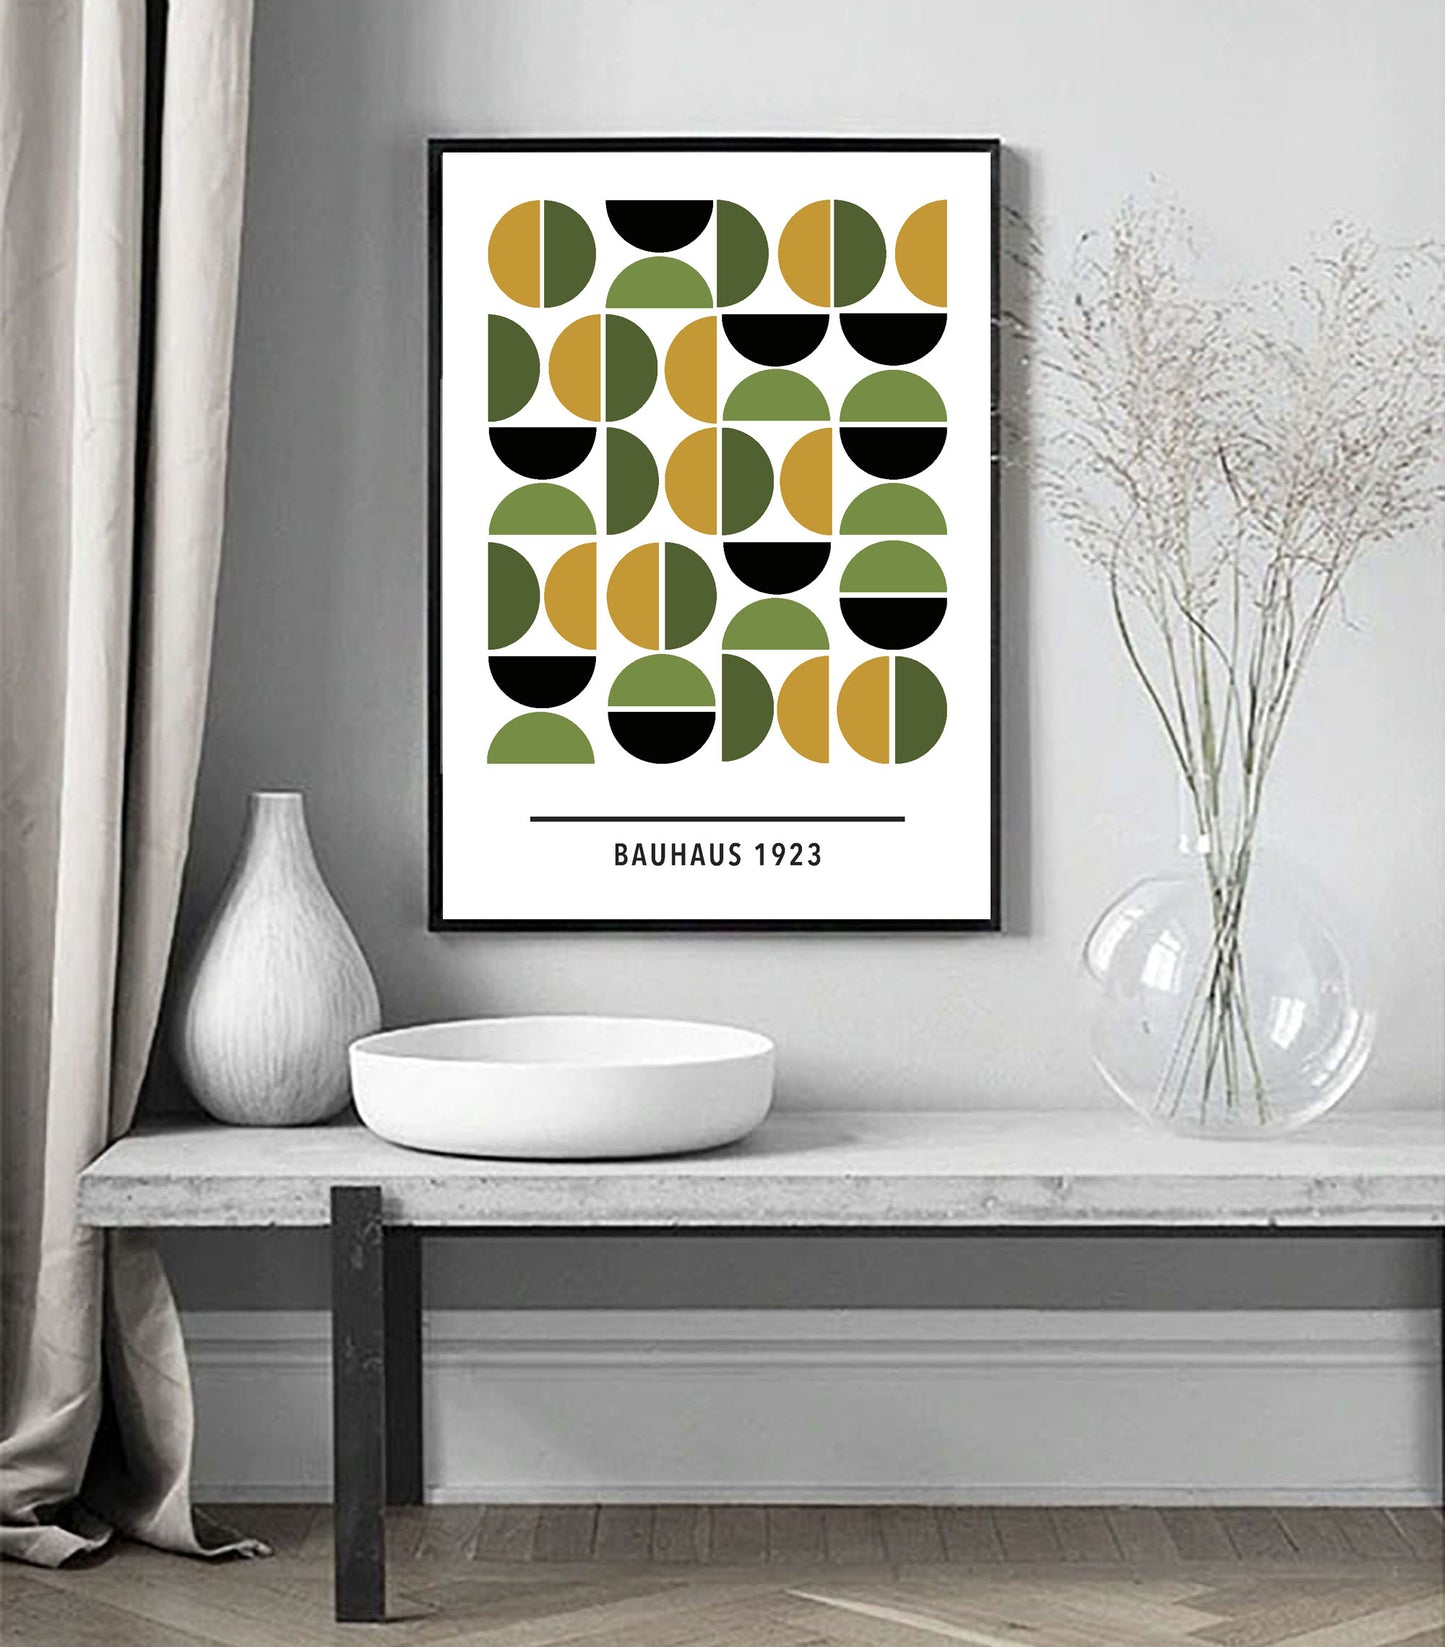 Grønn/gul Bauhaus kunsttrykk